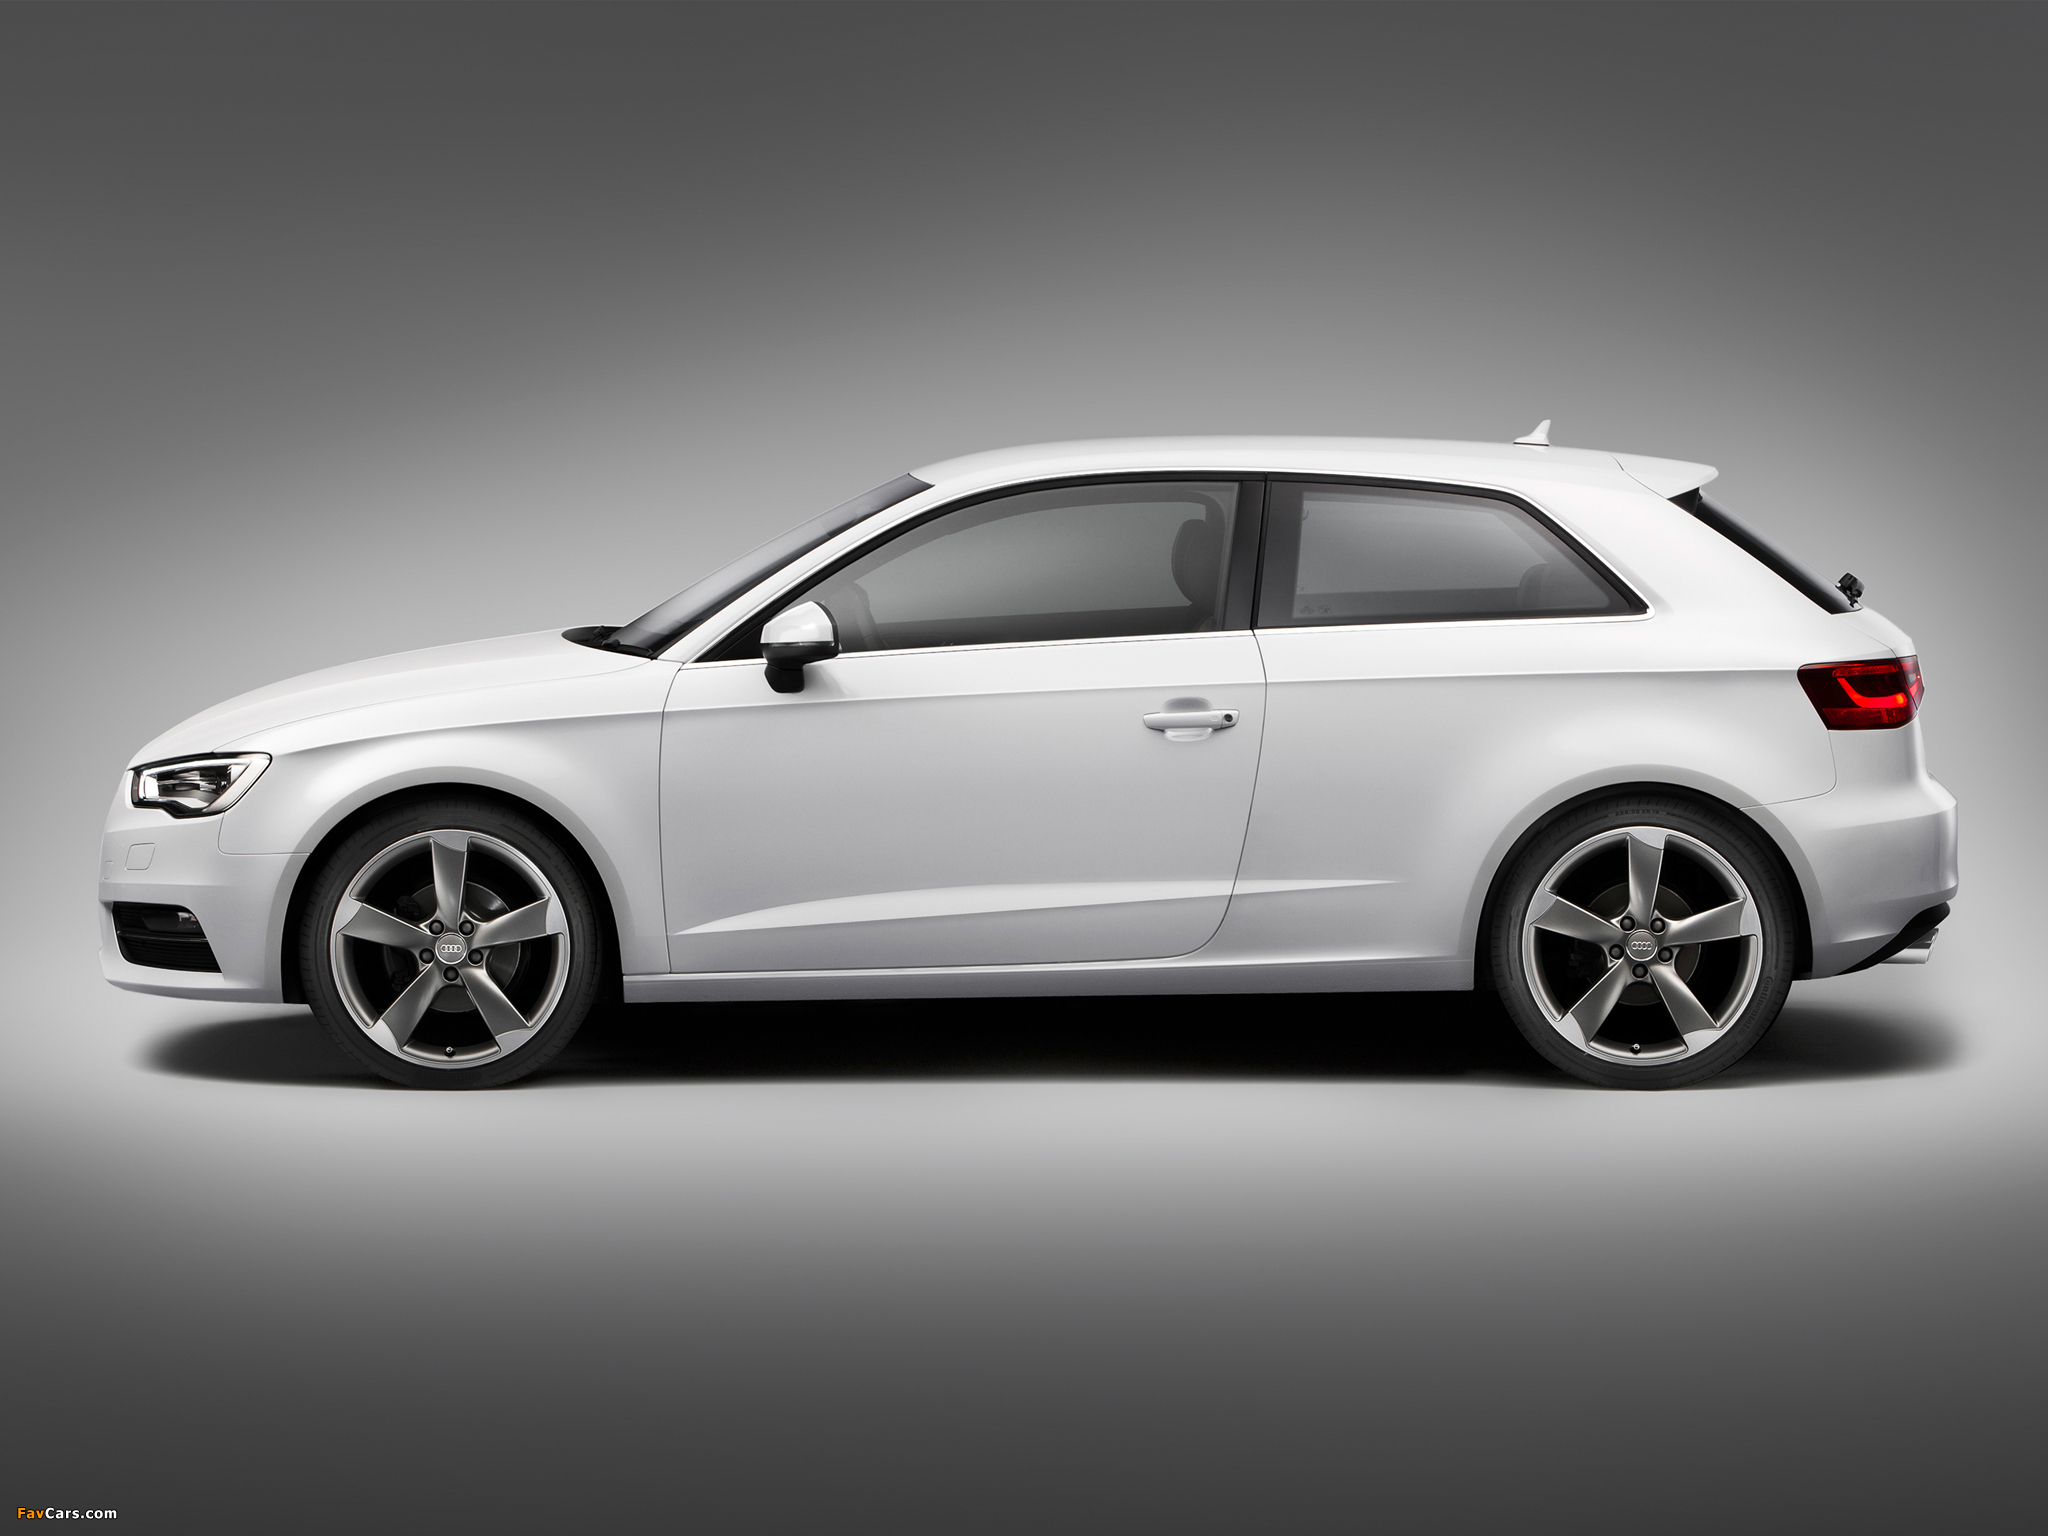 Audi A3 2.0 TDI 8V (2012) photos (2048 x 1536)